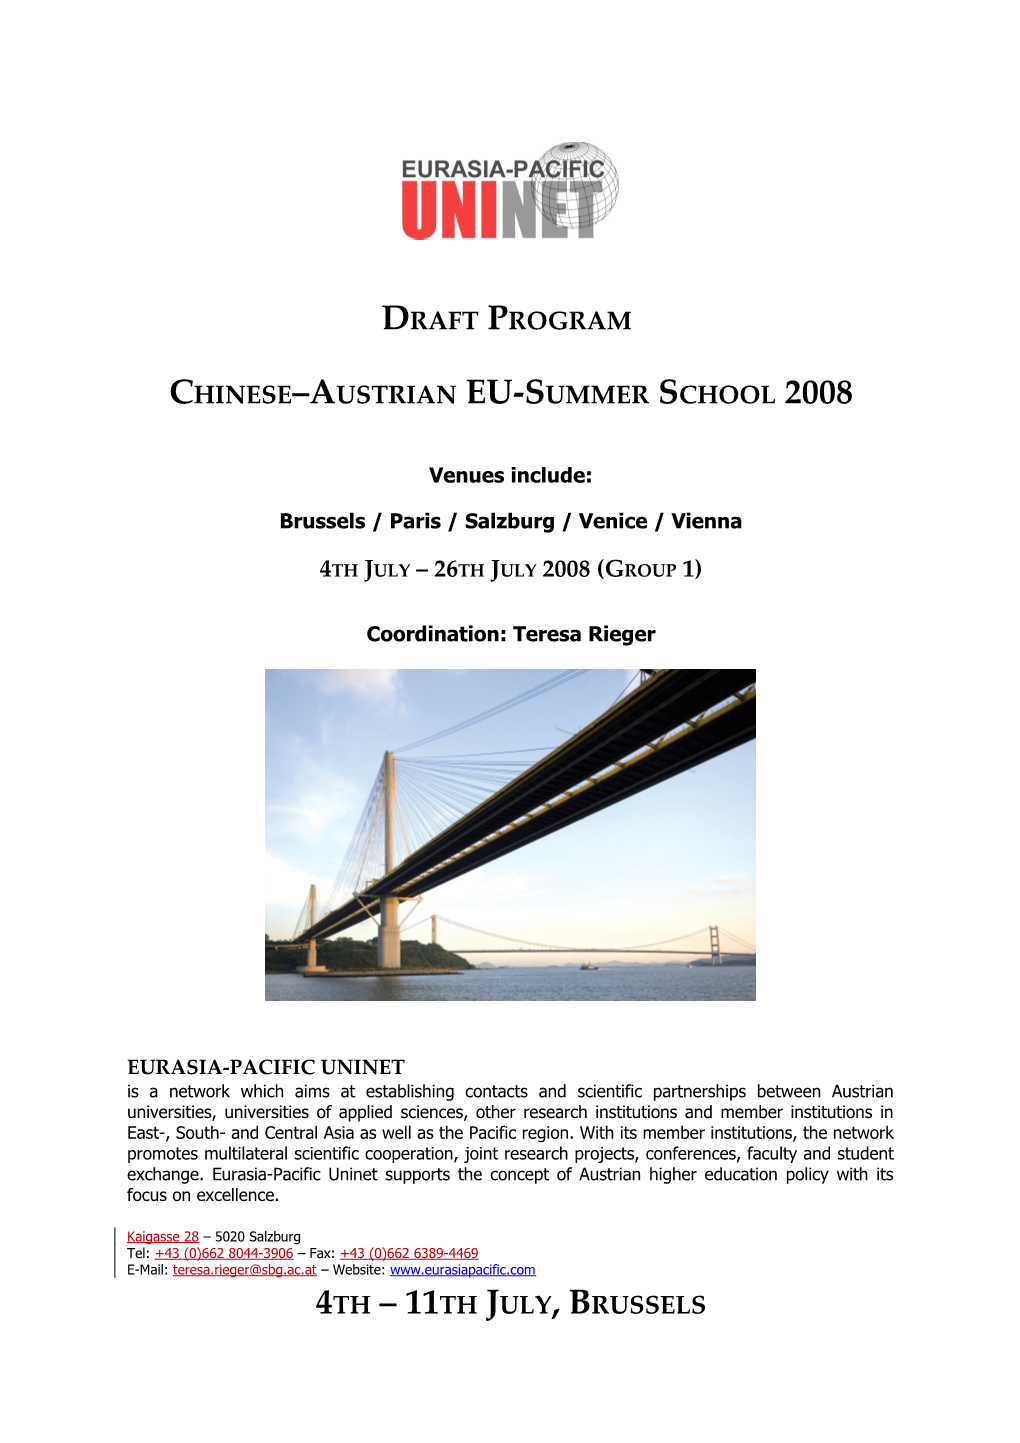 Chinese Austrian EU-Summer School 2008